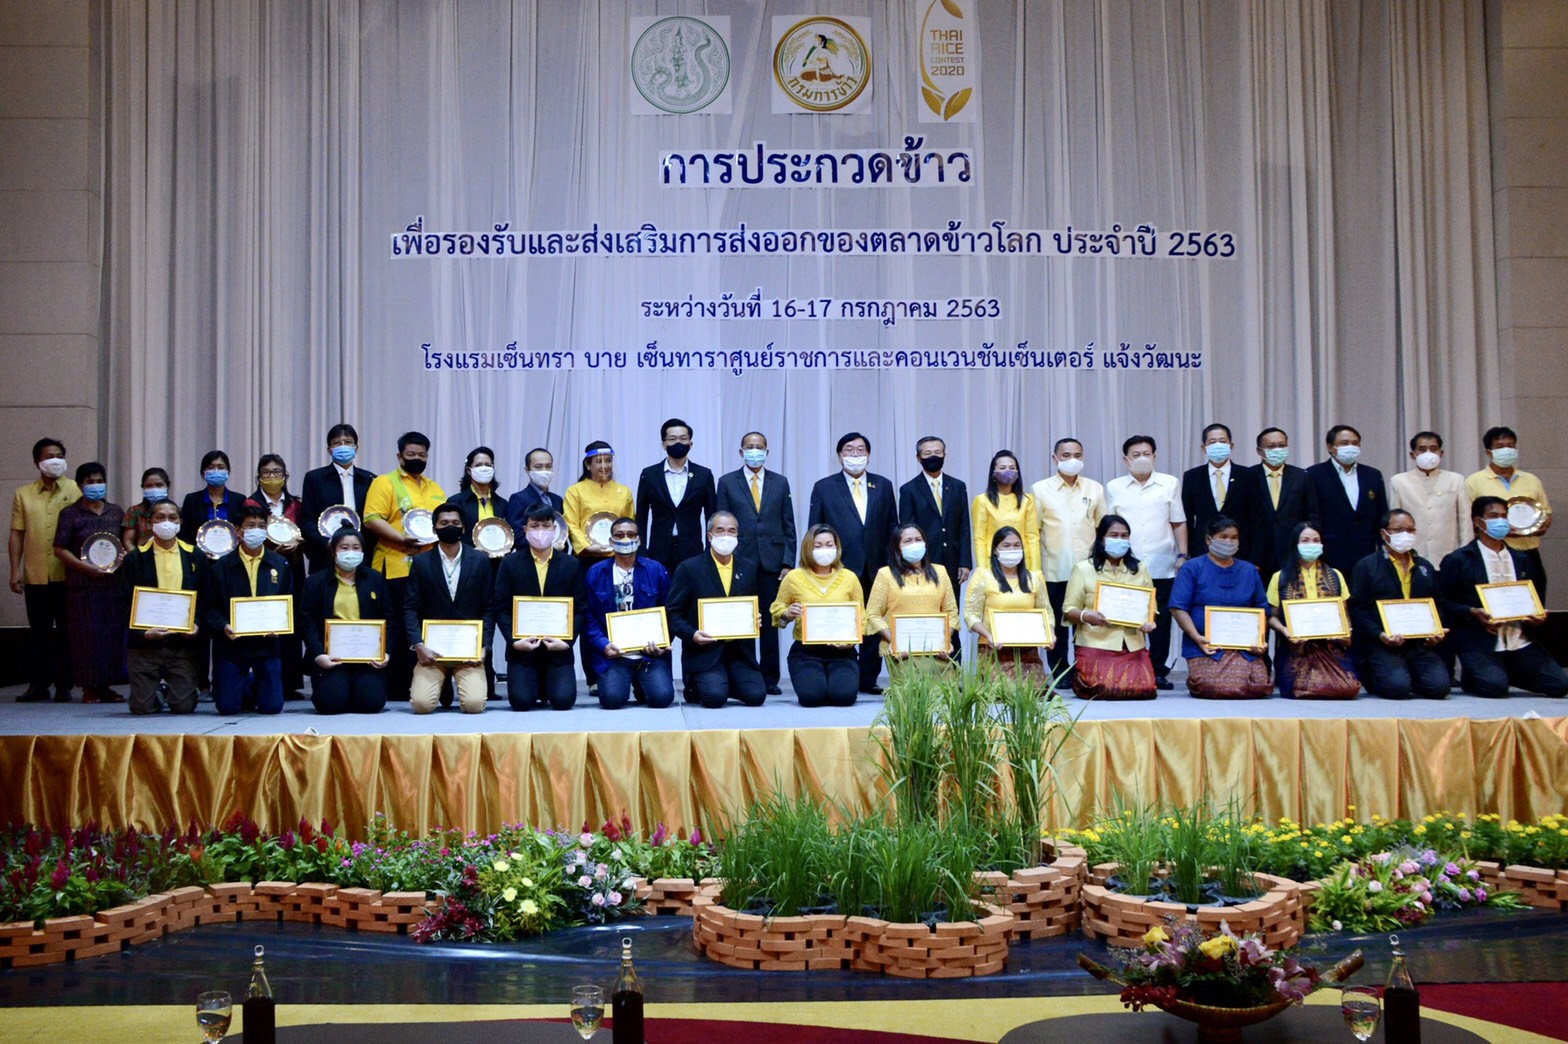 รัฐมนตรีช่วยเกษตรฯ ตั้งเป้าทวงแชมป์ส่งออกข้าว จับมือทุกภาคส่วน ตั้งธงเลือกตัวแทนพันธุ์ข้าวทีมชาติไทย